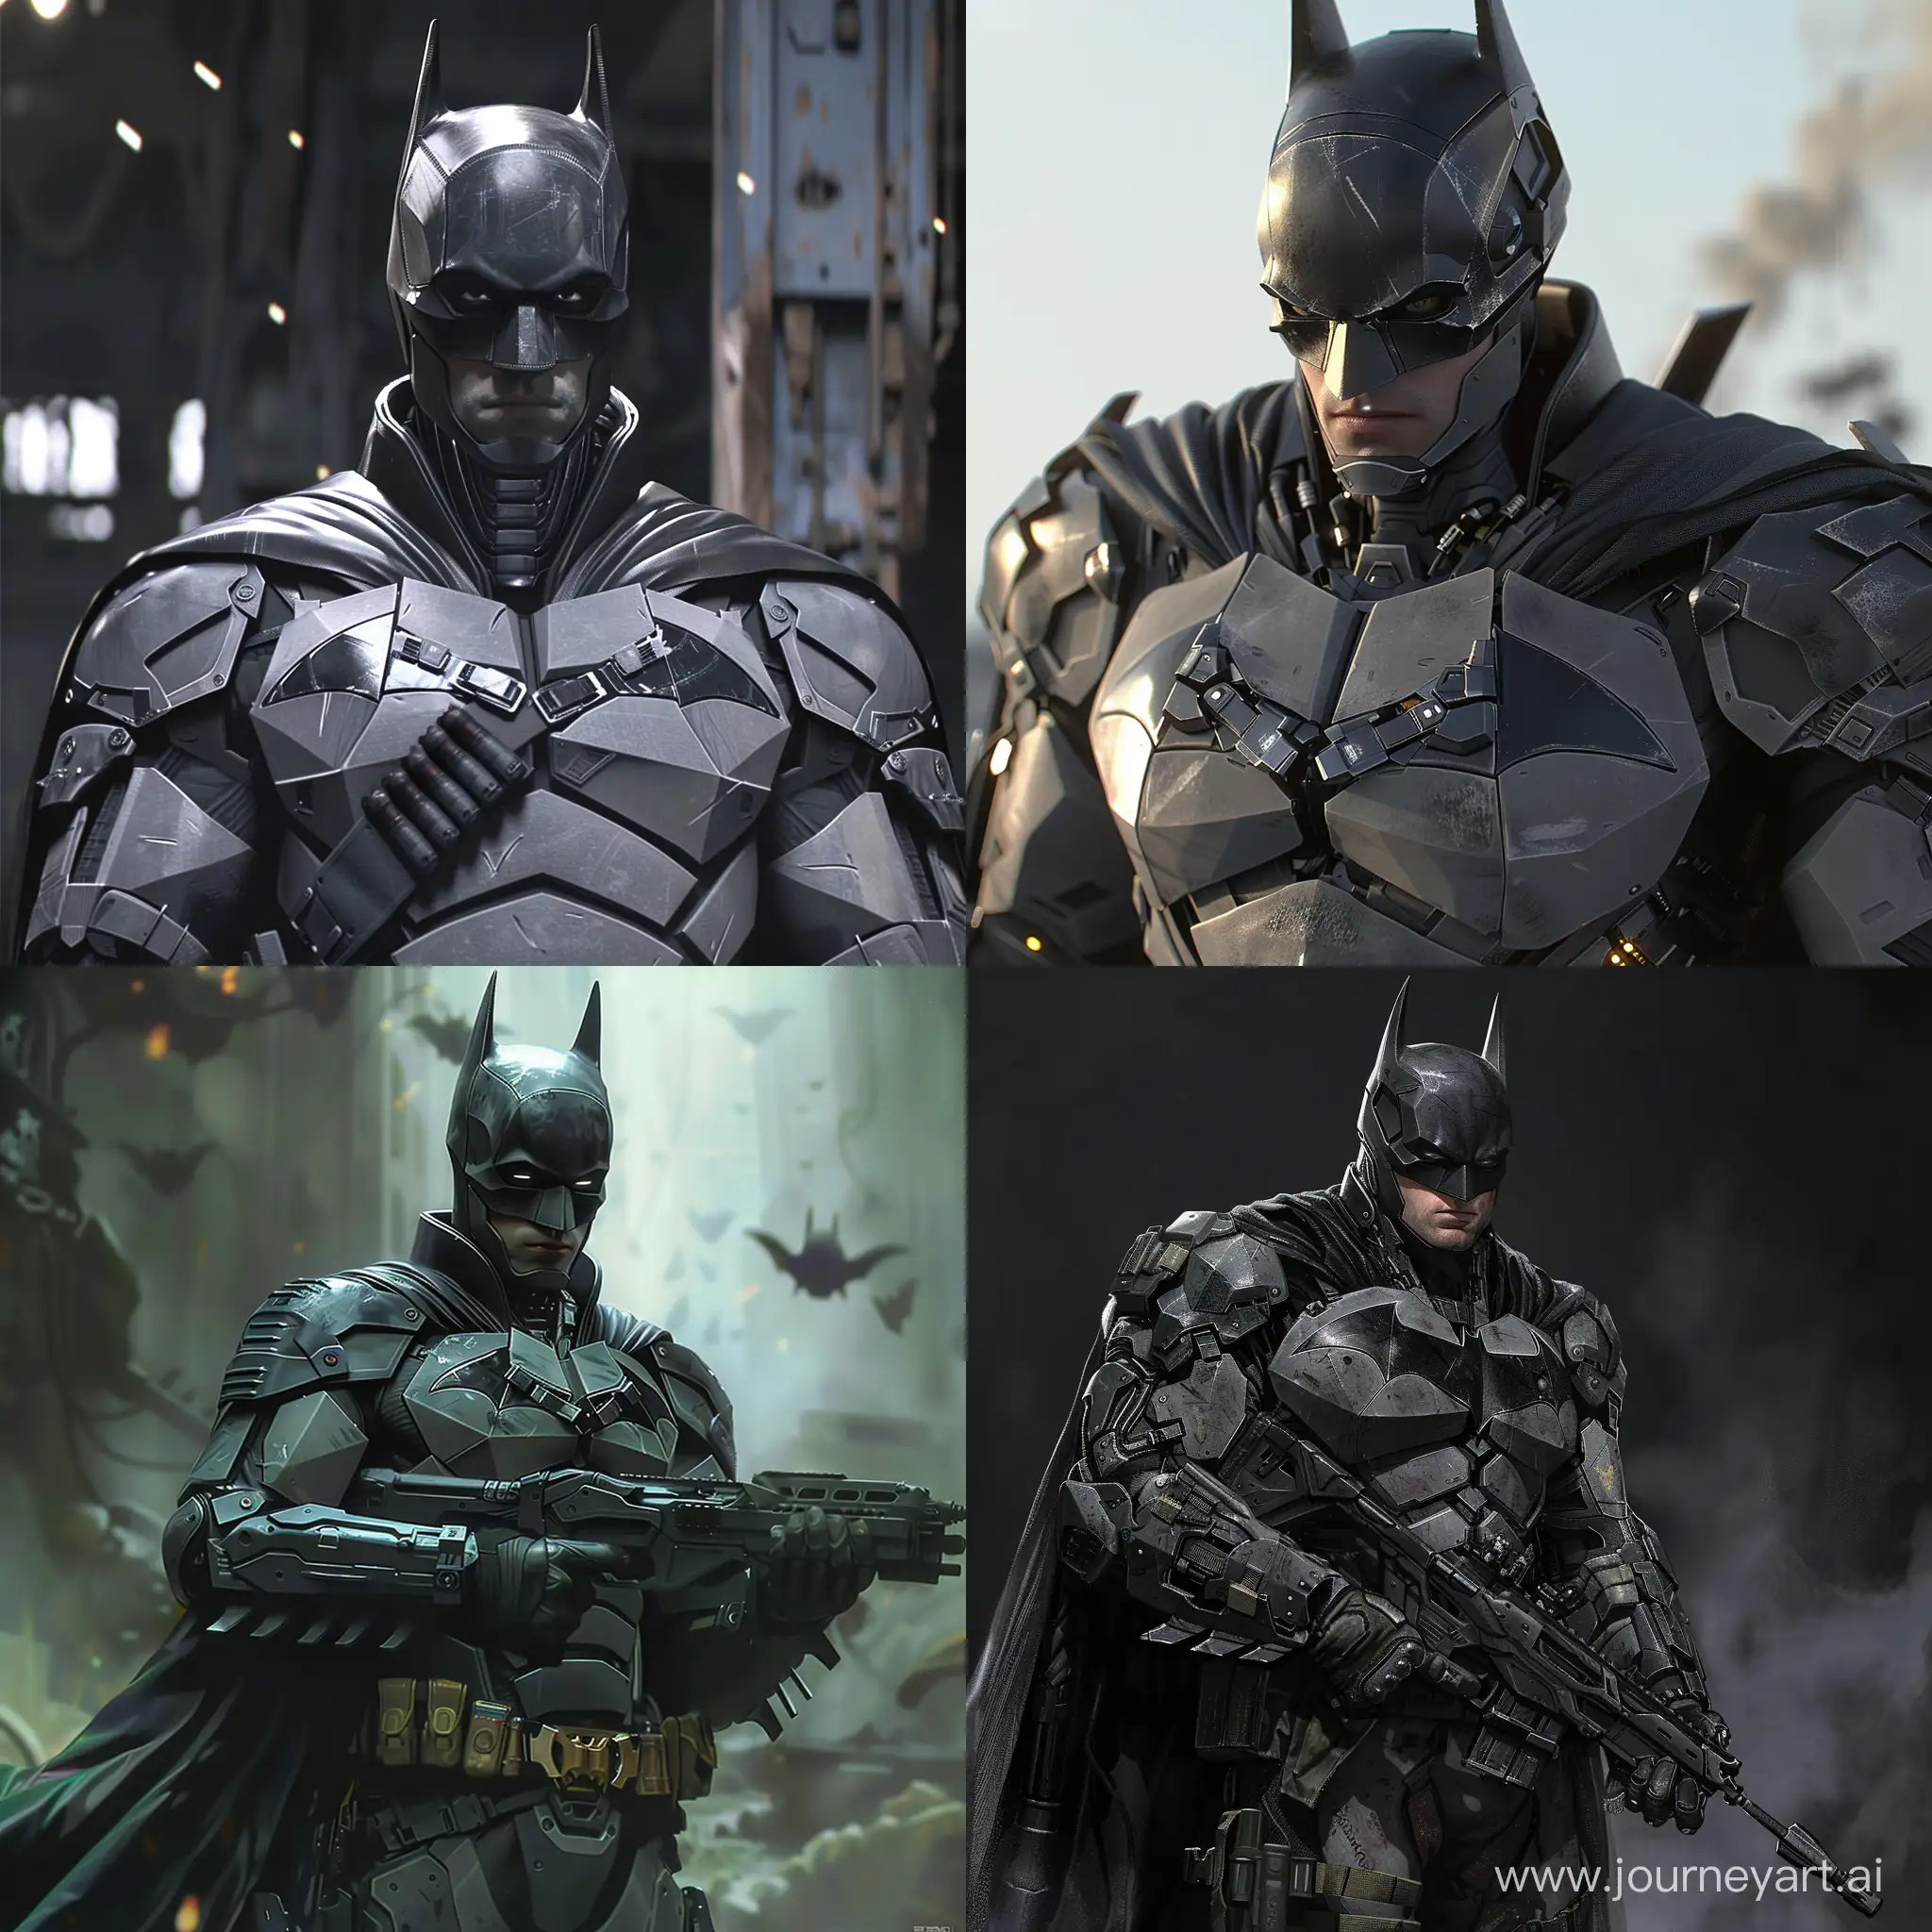 Batman as a futuristic soldier